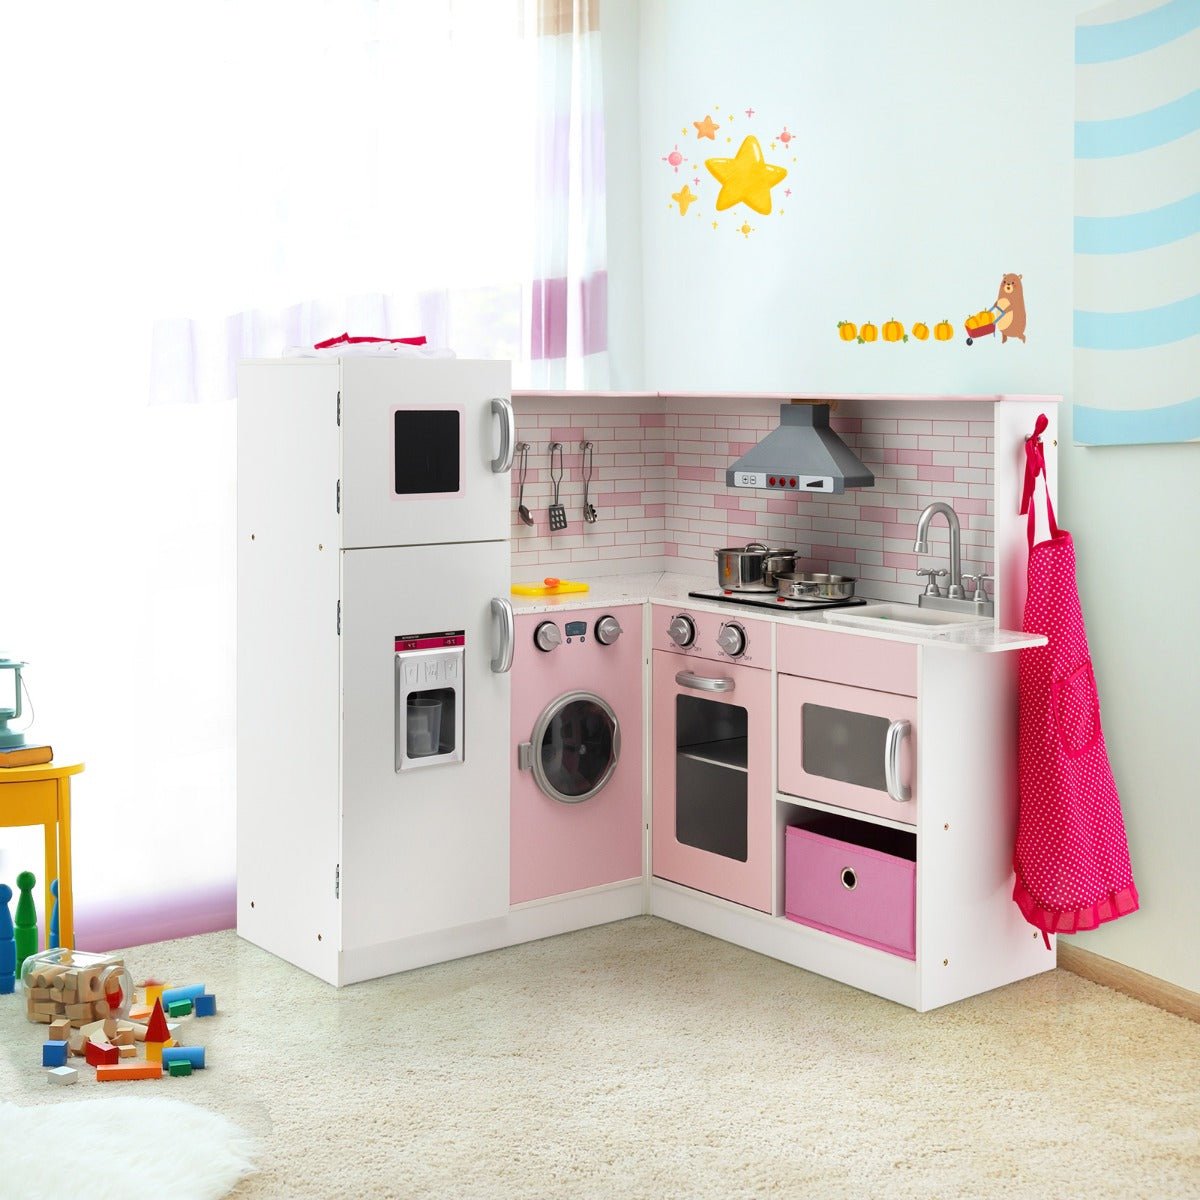 Nurturing Imagination: Kids Kitchen Pretend Play Set with Cookware & Apron